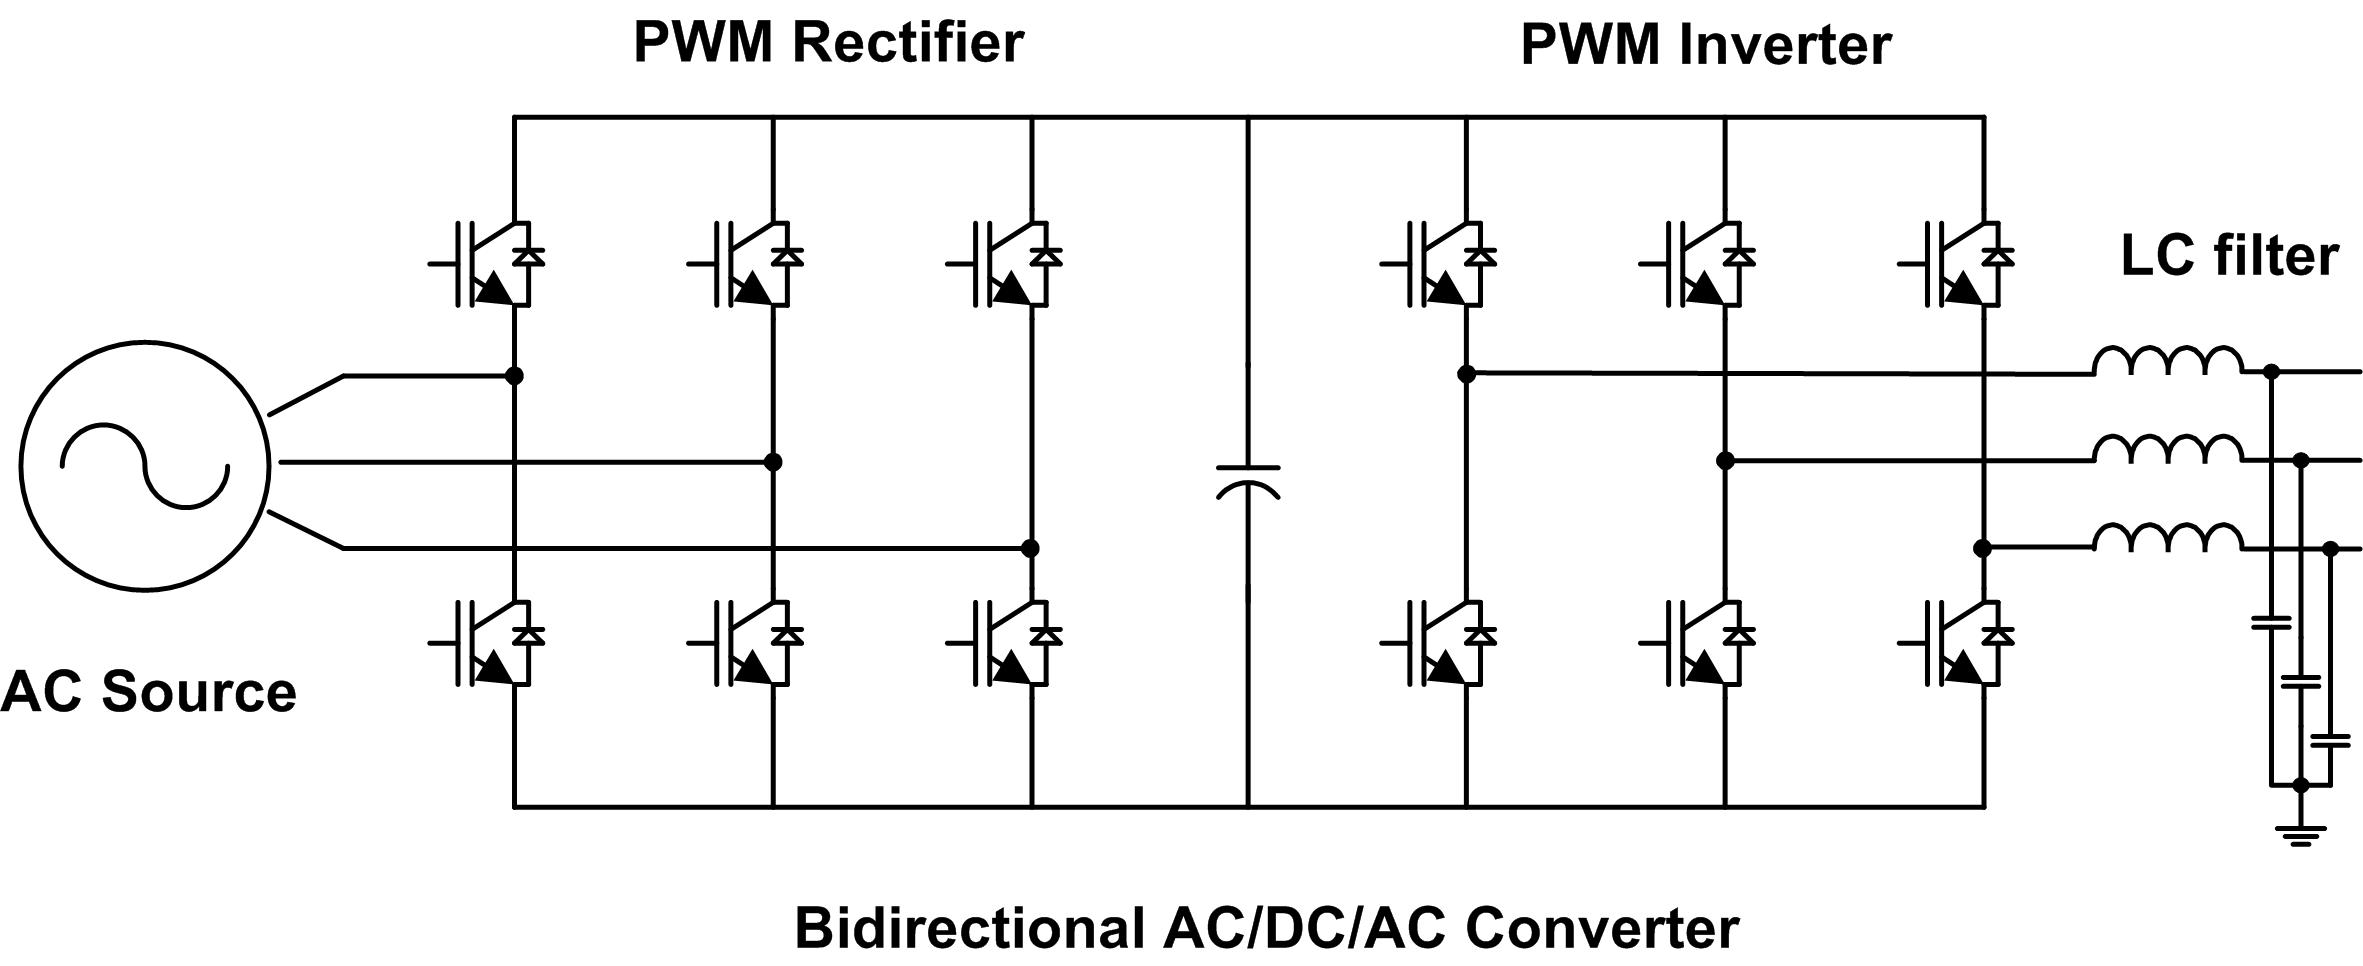 양방향 AC/DC/AC 컨버터